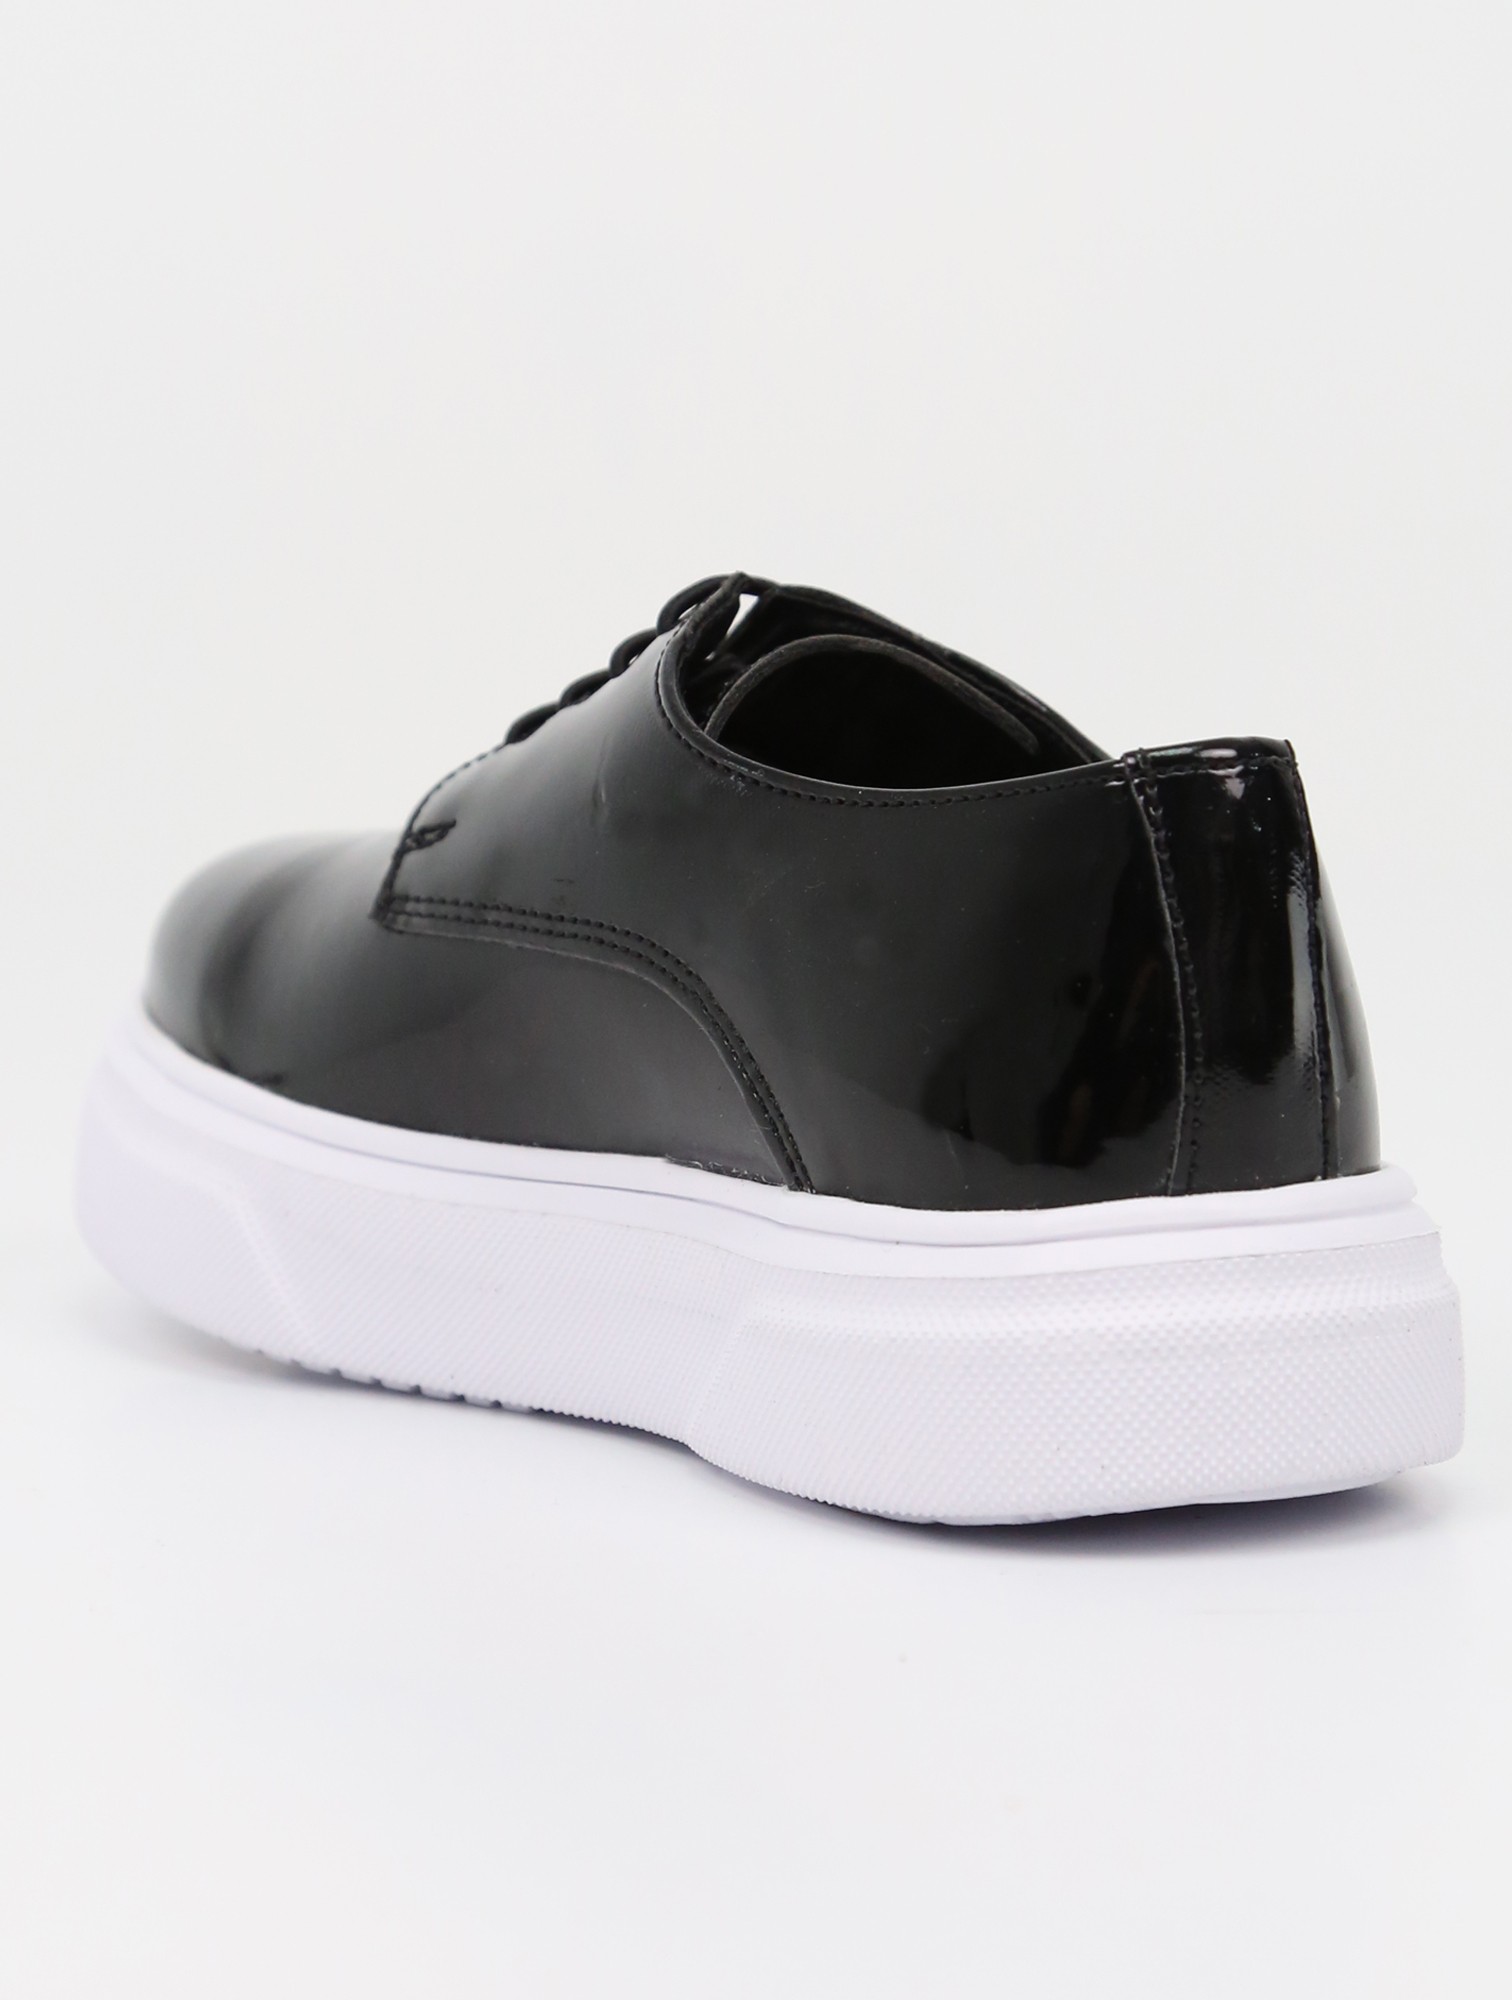 SIRRI Schwarze Slip-On Lackschuhe für Jungen, Sneaker im Gibson-Design für formelle und Freizeitkleidung